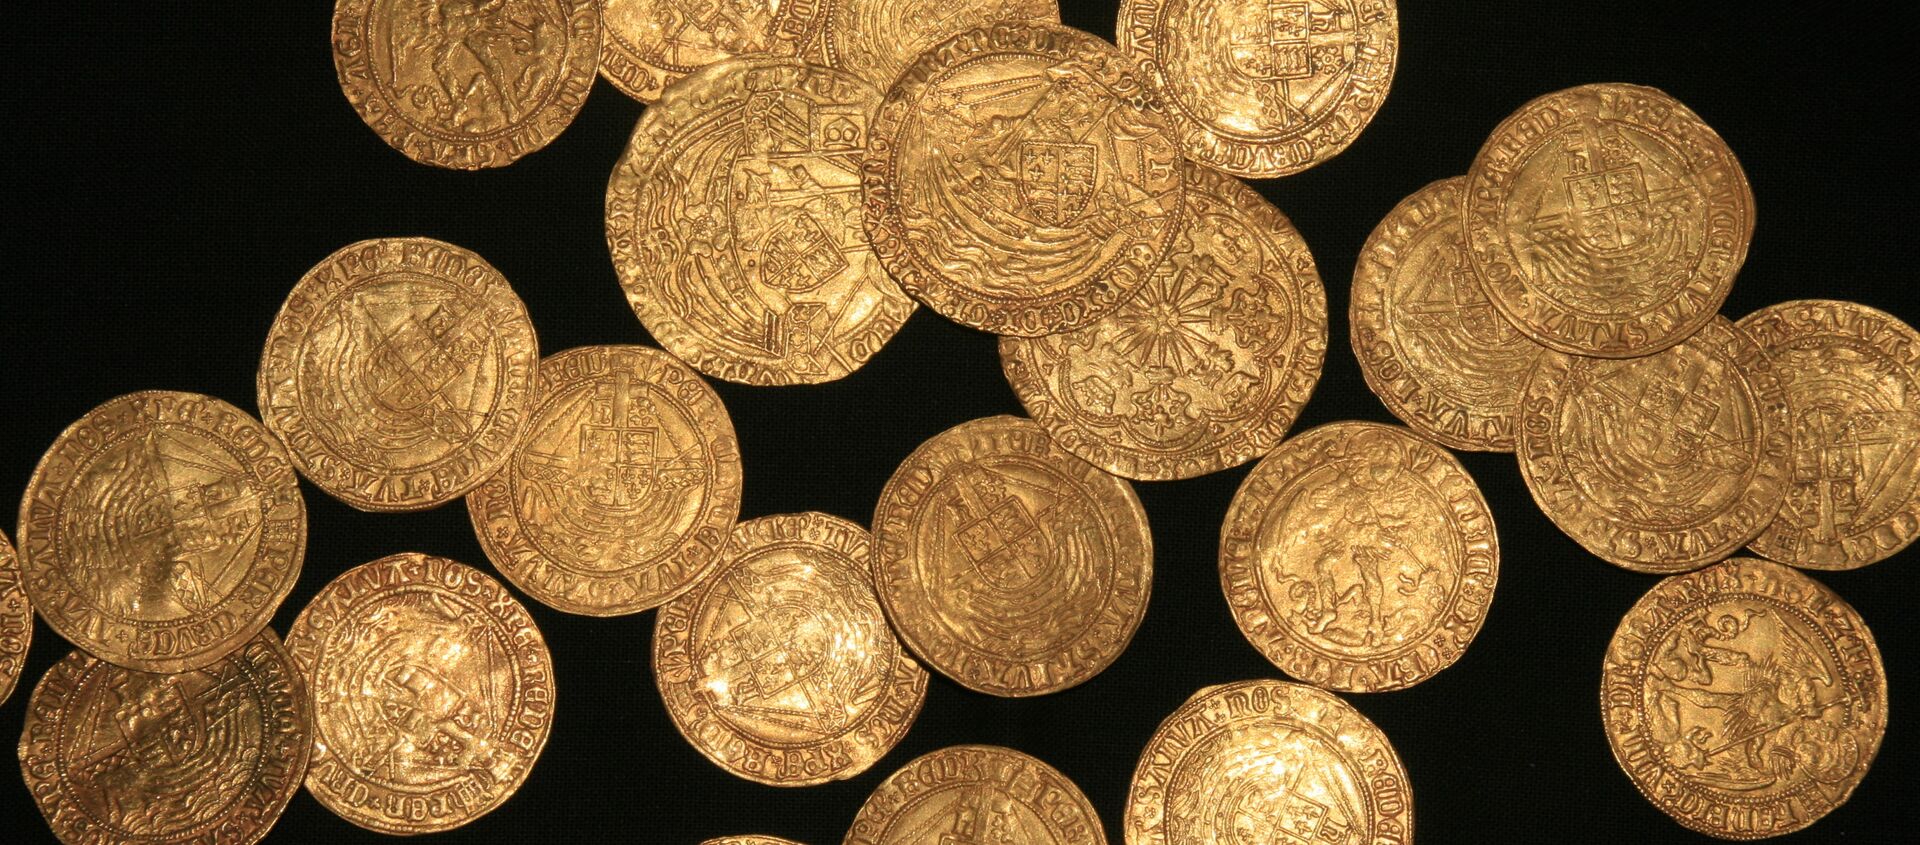 Unas monedas de oro de la época de la dinastía Tudor encontradas en un jardín en Inglaterra - Sputnik Mundo, 1920, 12.12.2020